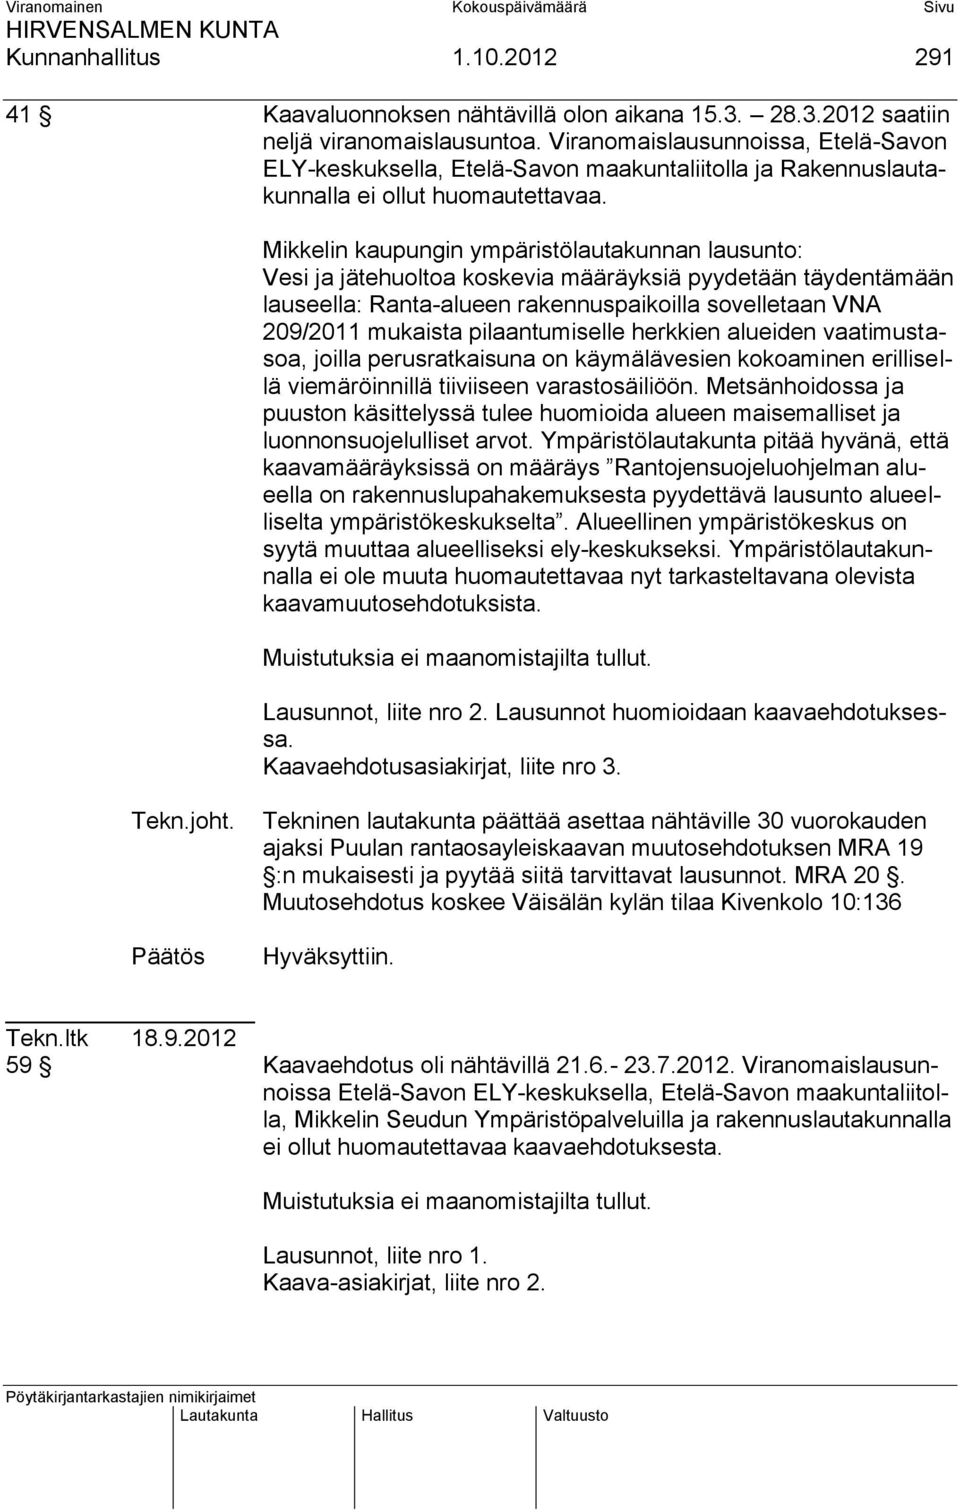 Mikkelin kaupungin ympäristölautakunnan lausunto: Vesi ja jätehuoltoa koskevia määräyksiä pyydetään täydentämään lauseella: Ranta-alueen rakennuspaikoilla sovelletaan VNA 209/2011 mukaista